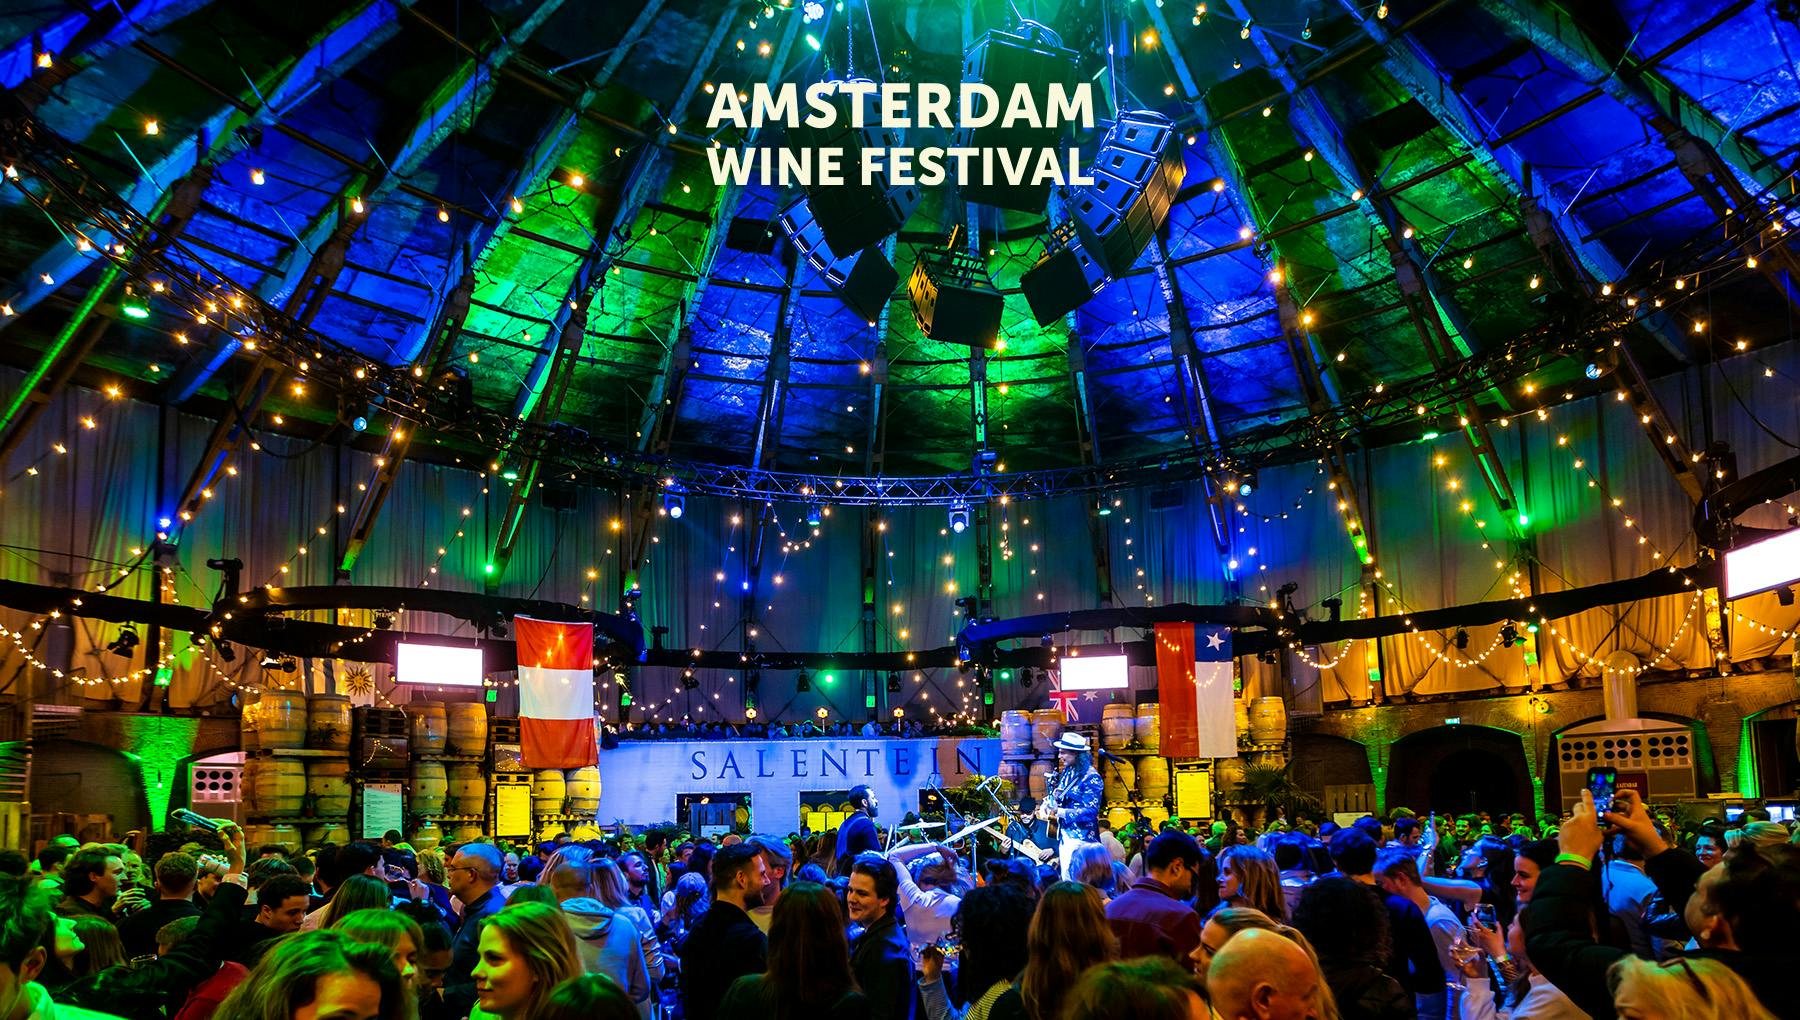 Amsterdam Wine Festival - 28 september t/m 1 oktober op het Gashouderterrein.